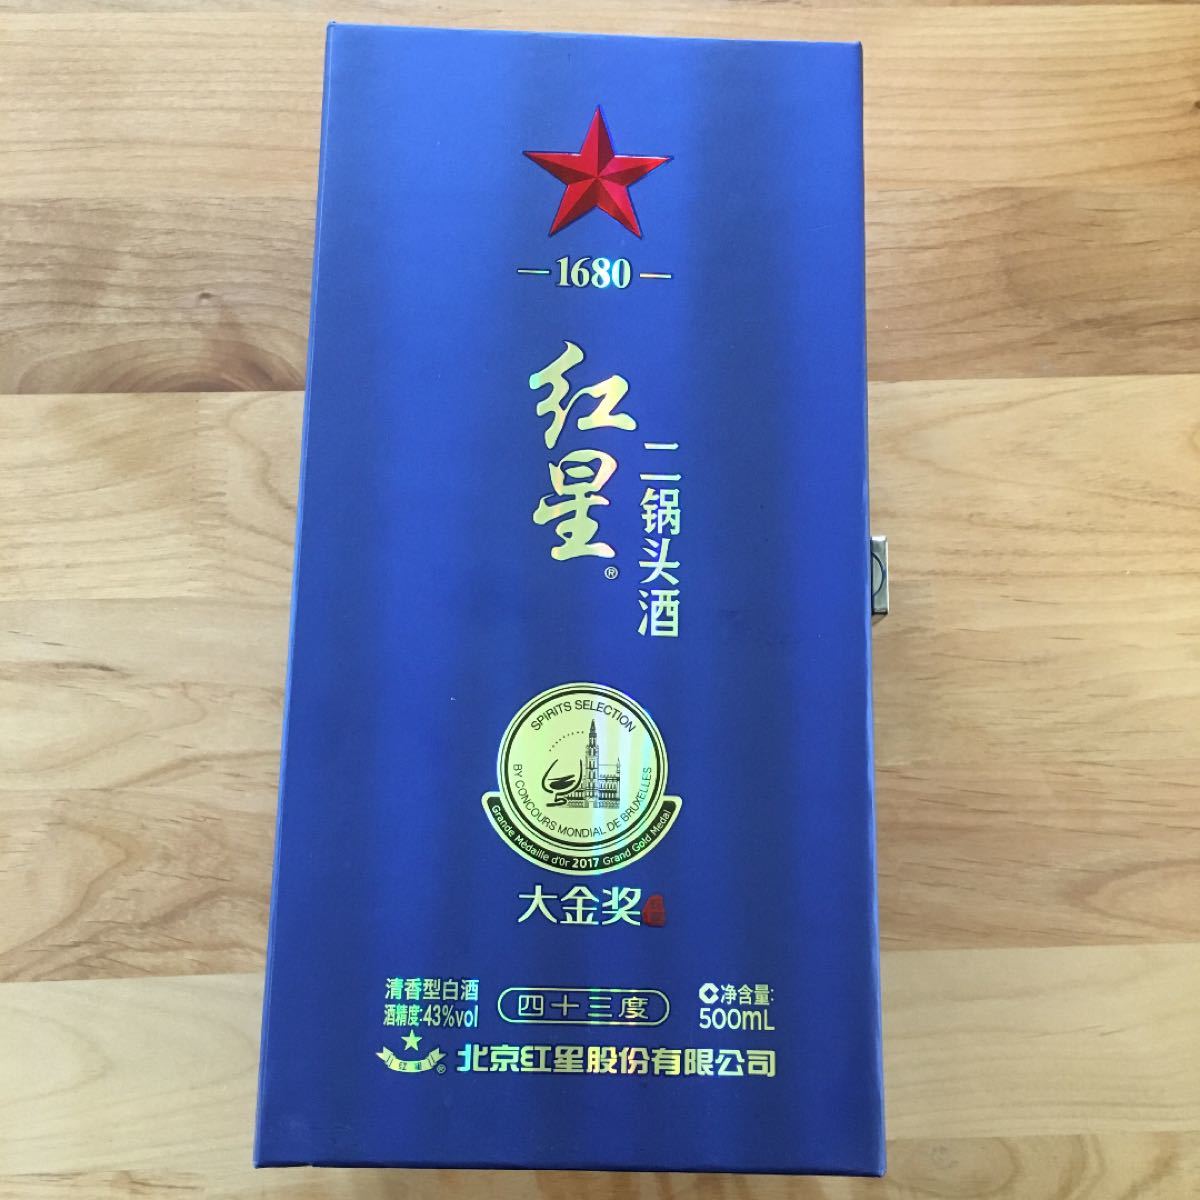 中国　白酒　紅星　2017 spirits selection 金賞　　アルコール度数43% 500ml